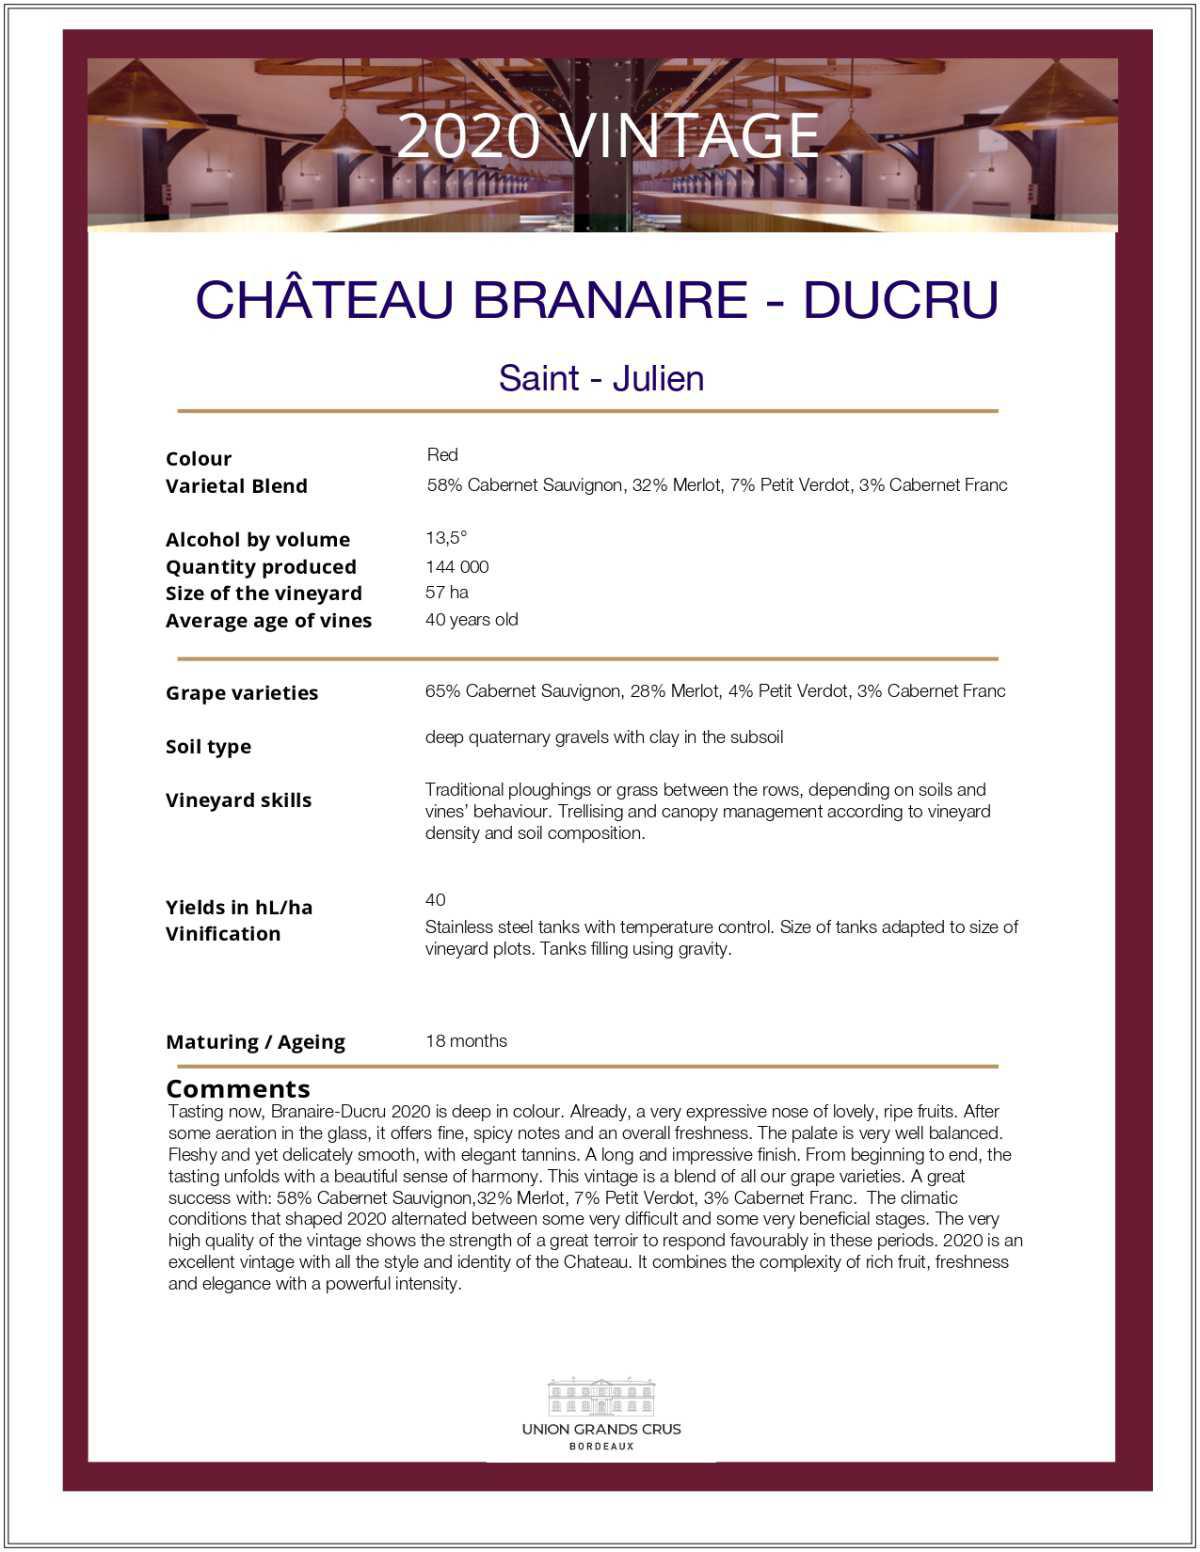 Château Branaire - Ducru 